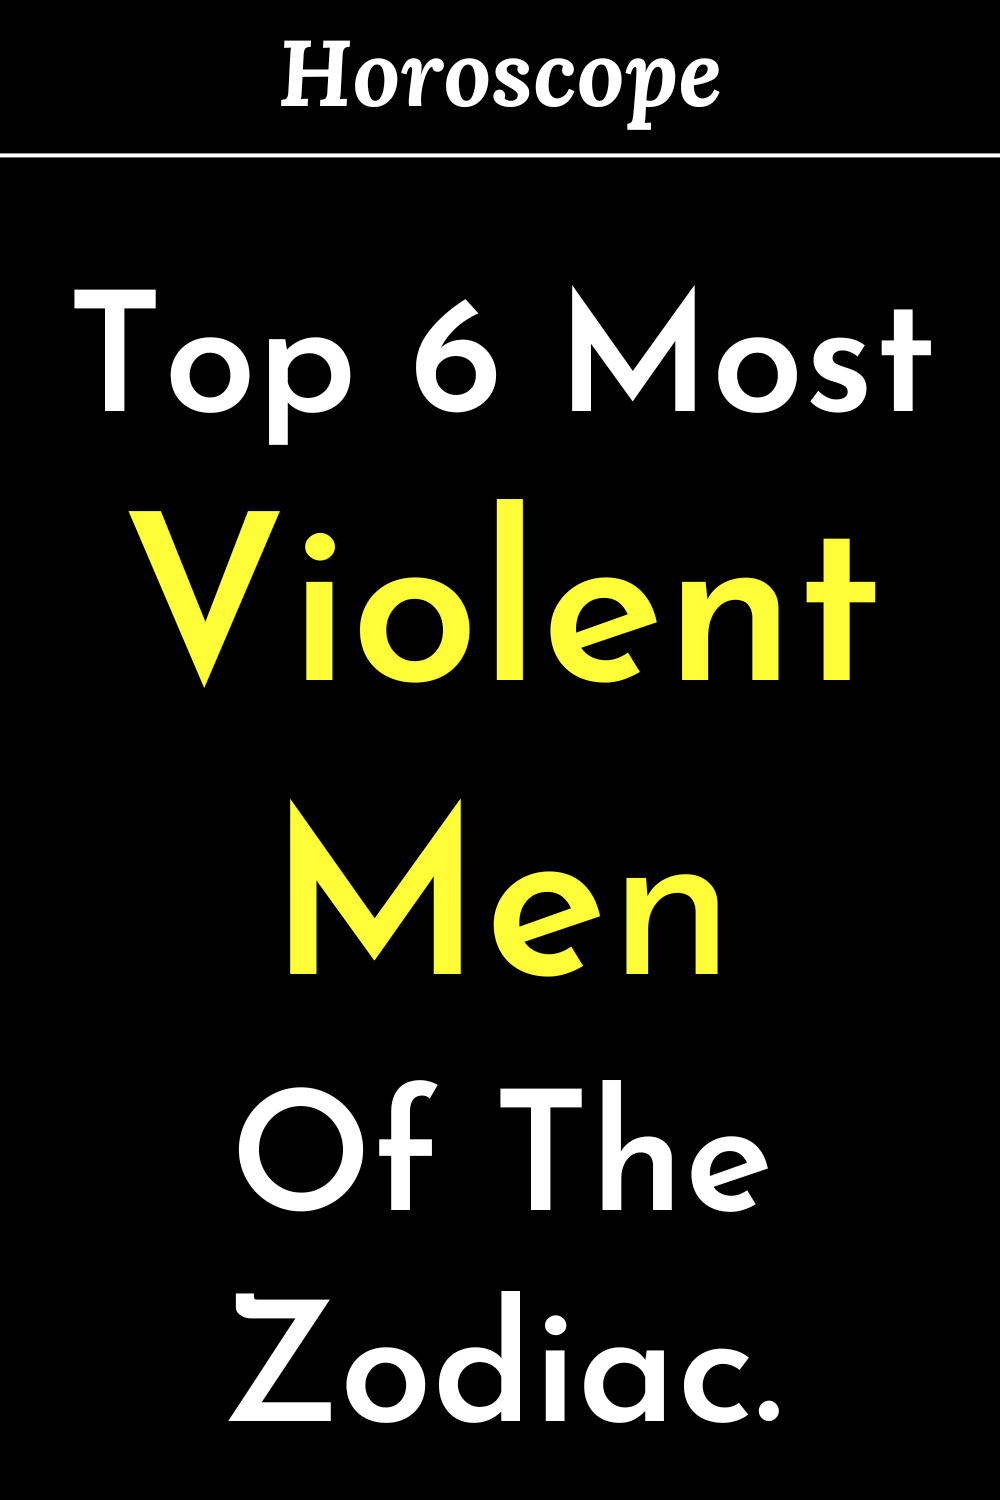 Top 6 Most Violent Men Of The Zodiac.